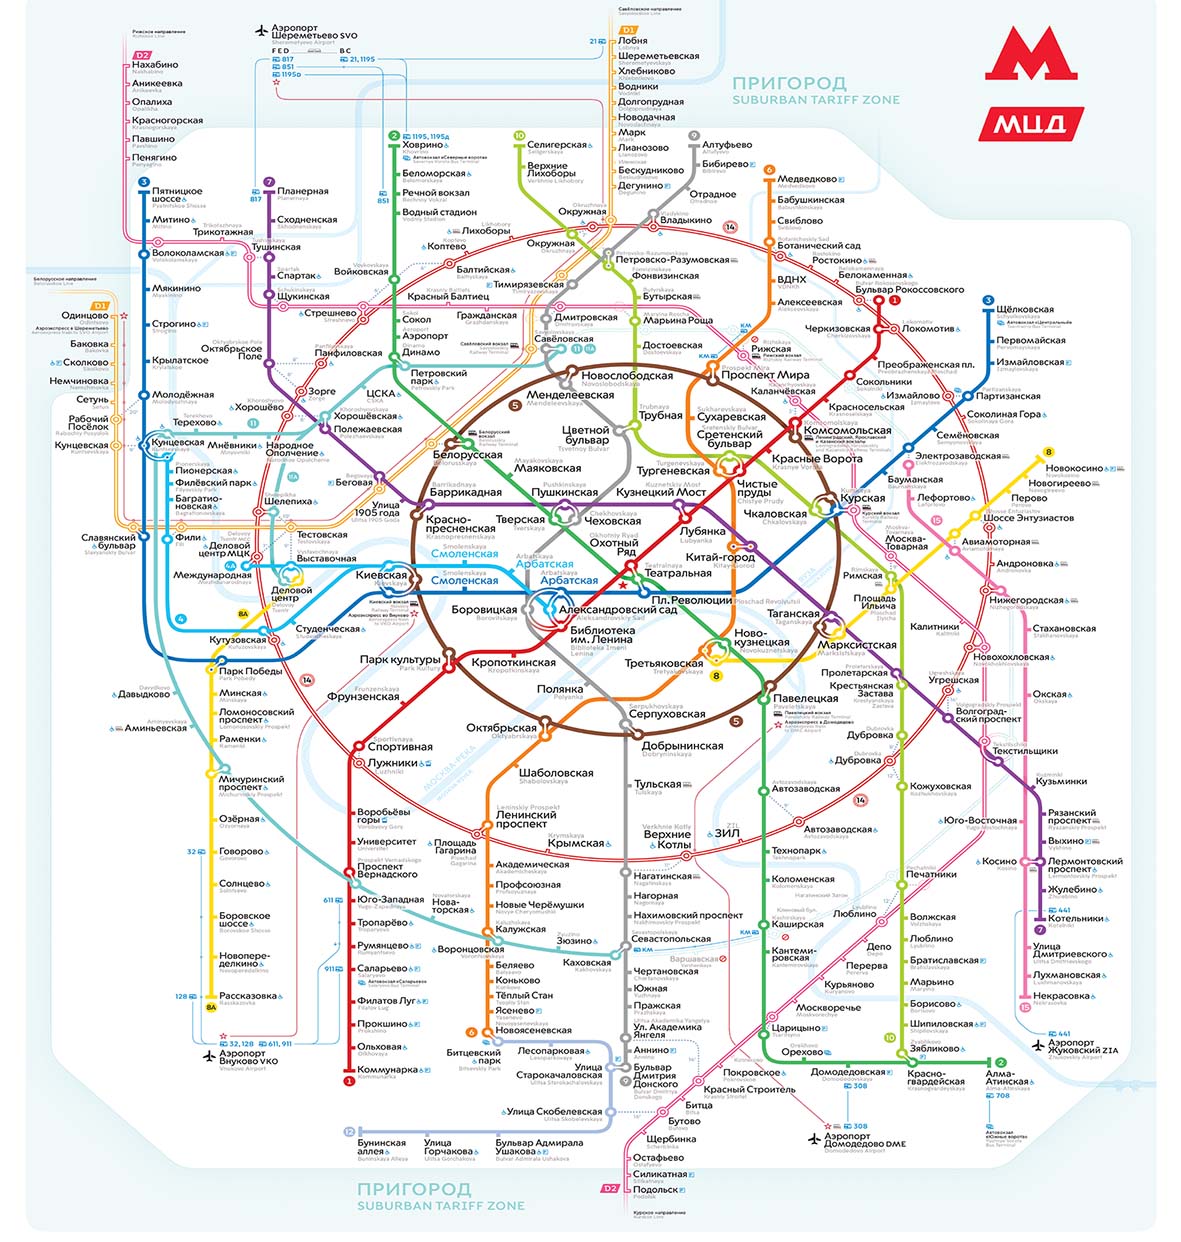 Rusça, türkçe, ingilizce tercümeler: Moskova metrosu